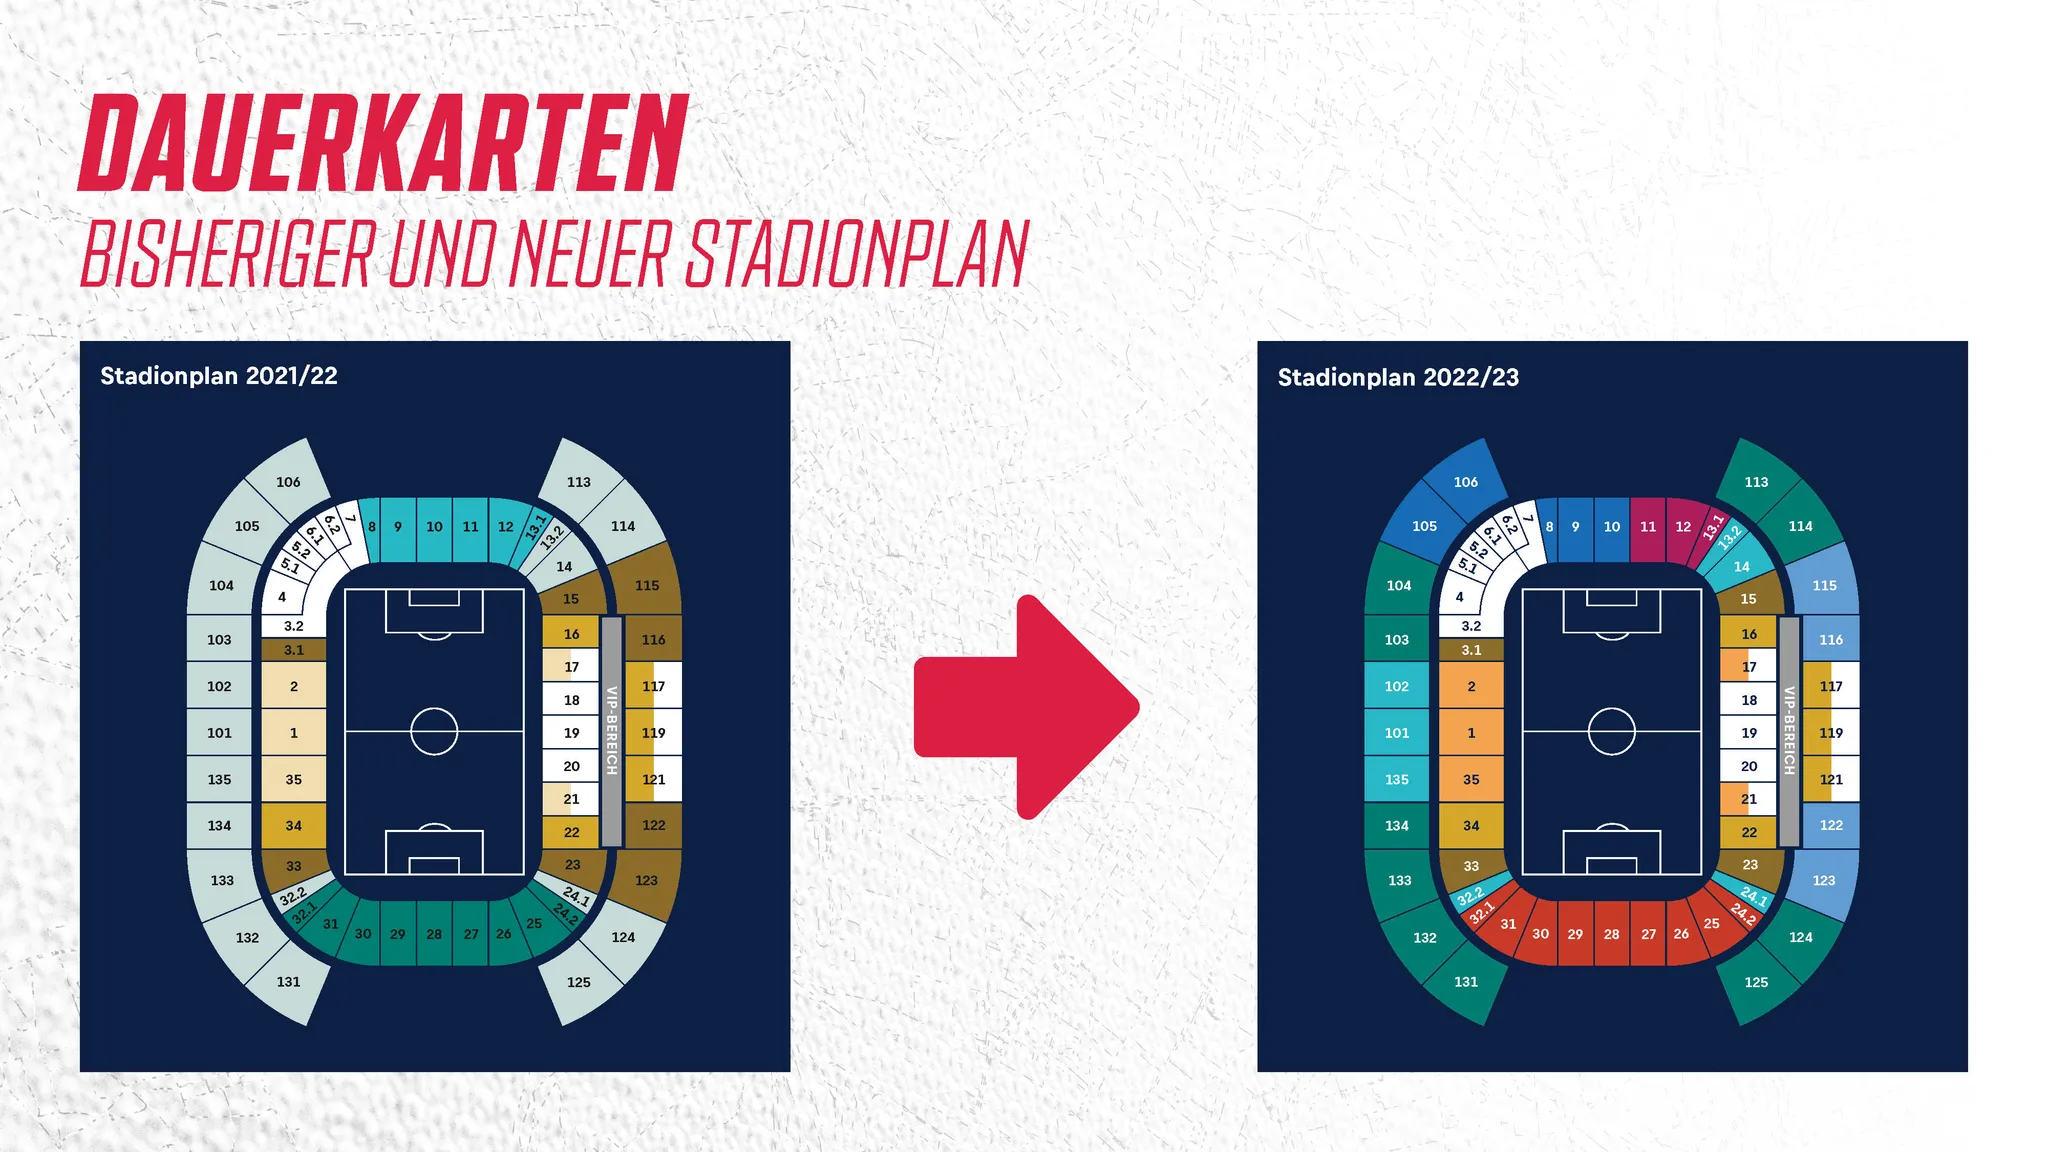 Veränderung-Stadionplan-Red-Bull-Arena-RB-Leipzig (Bild)